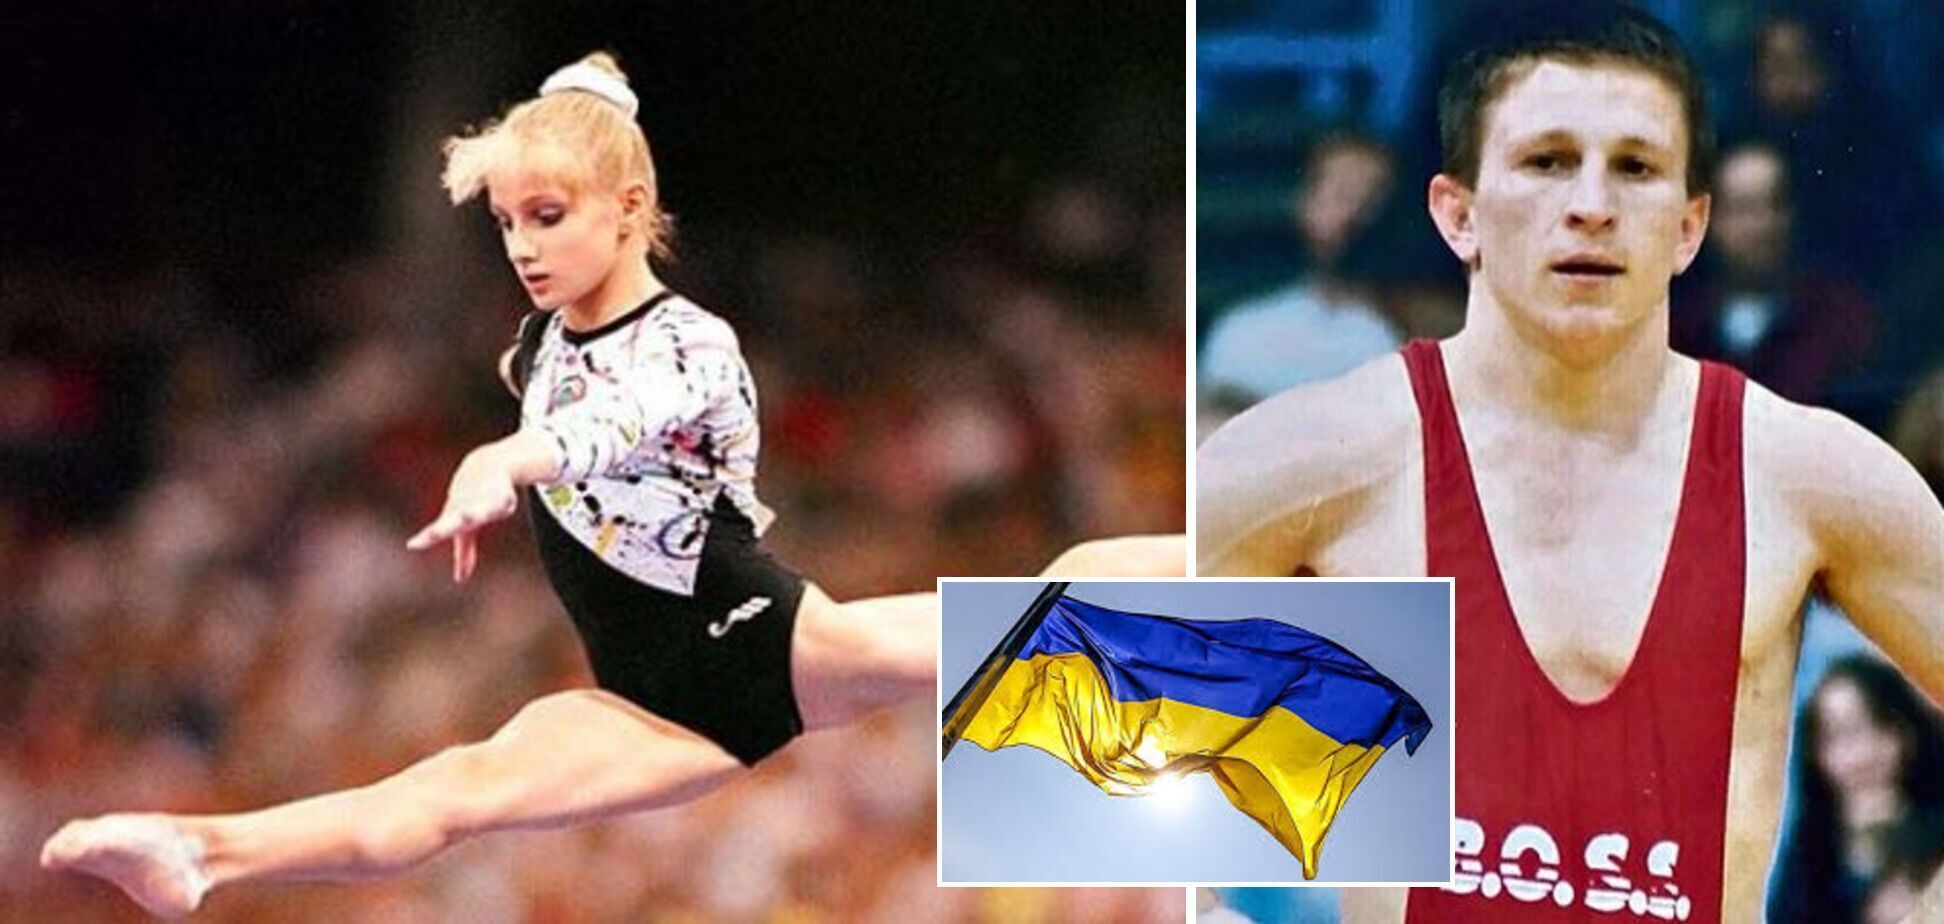 "Потенційно небезпечний": за прапор України заарештовували на Олімпіаді в Канаді, а перший прапороносець виступав у РФ після вторгнення